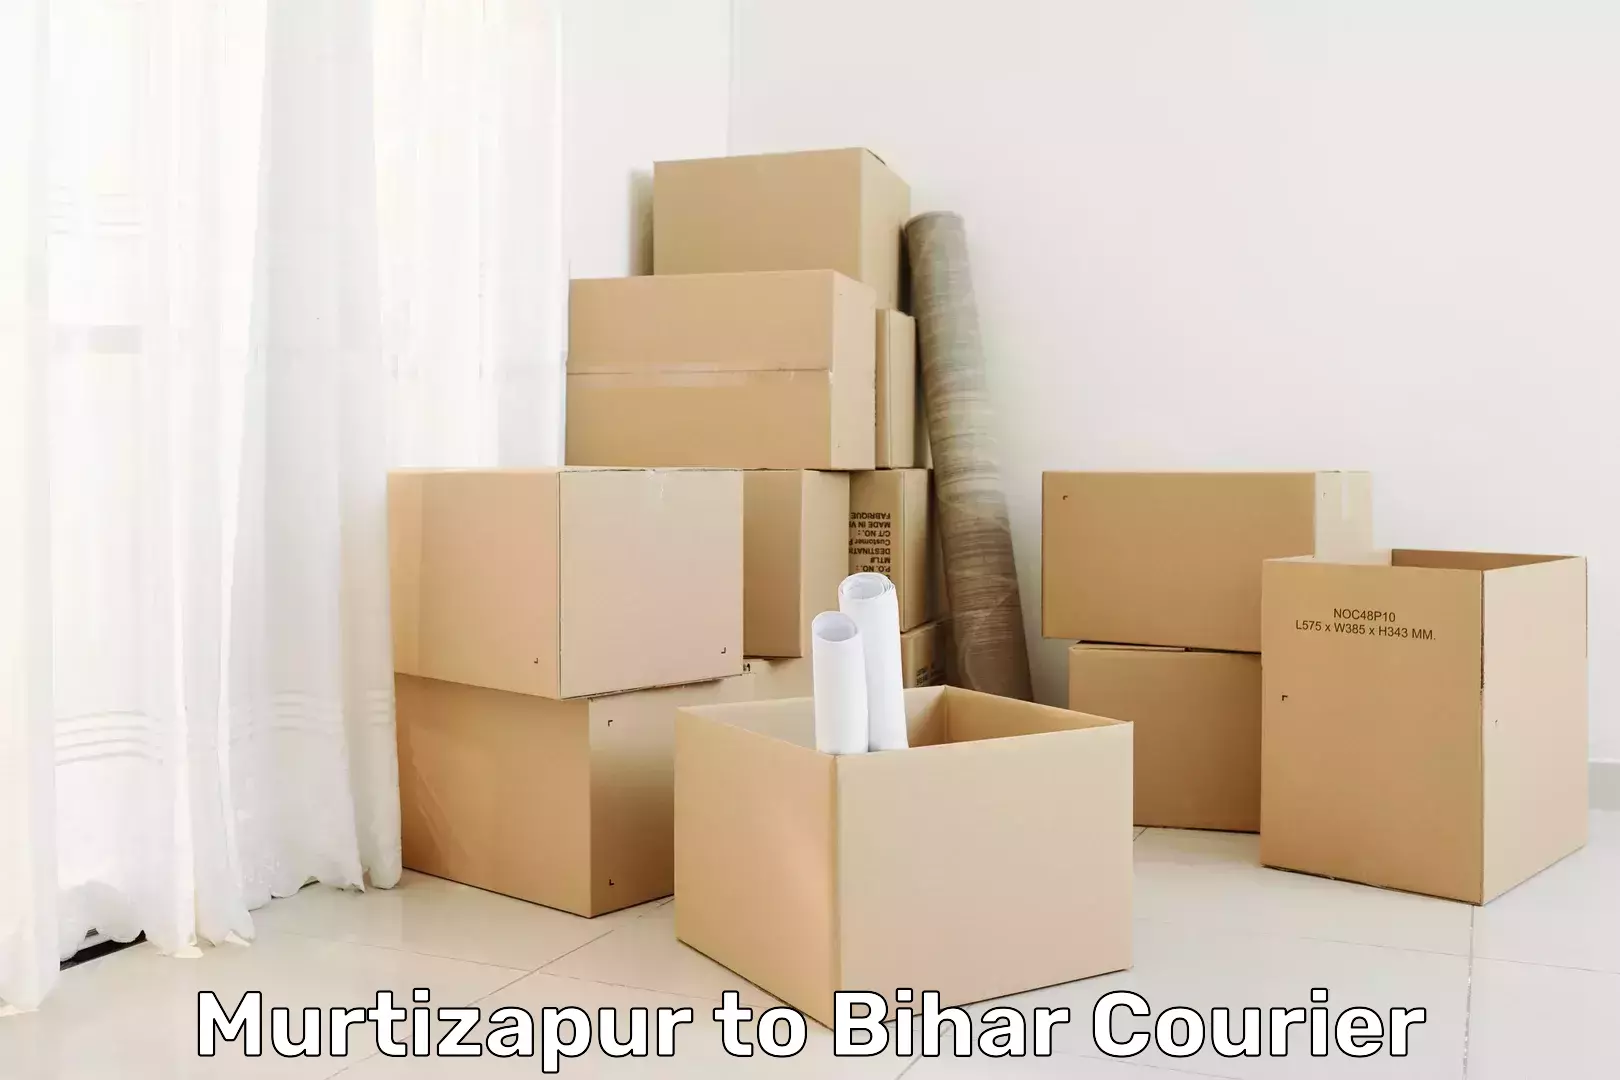 Same-day delivery solutions Murtizapur to Barhiya